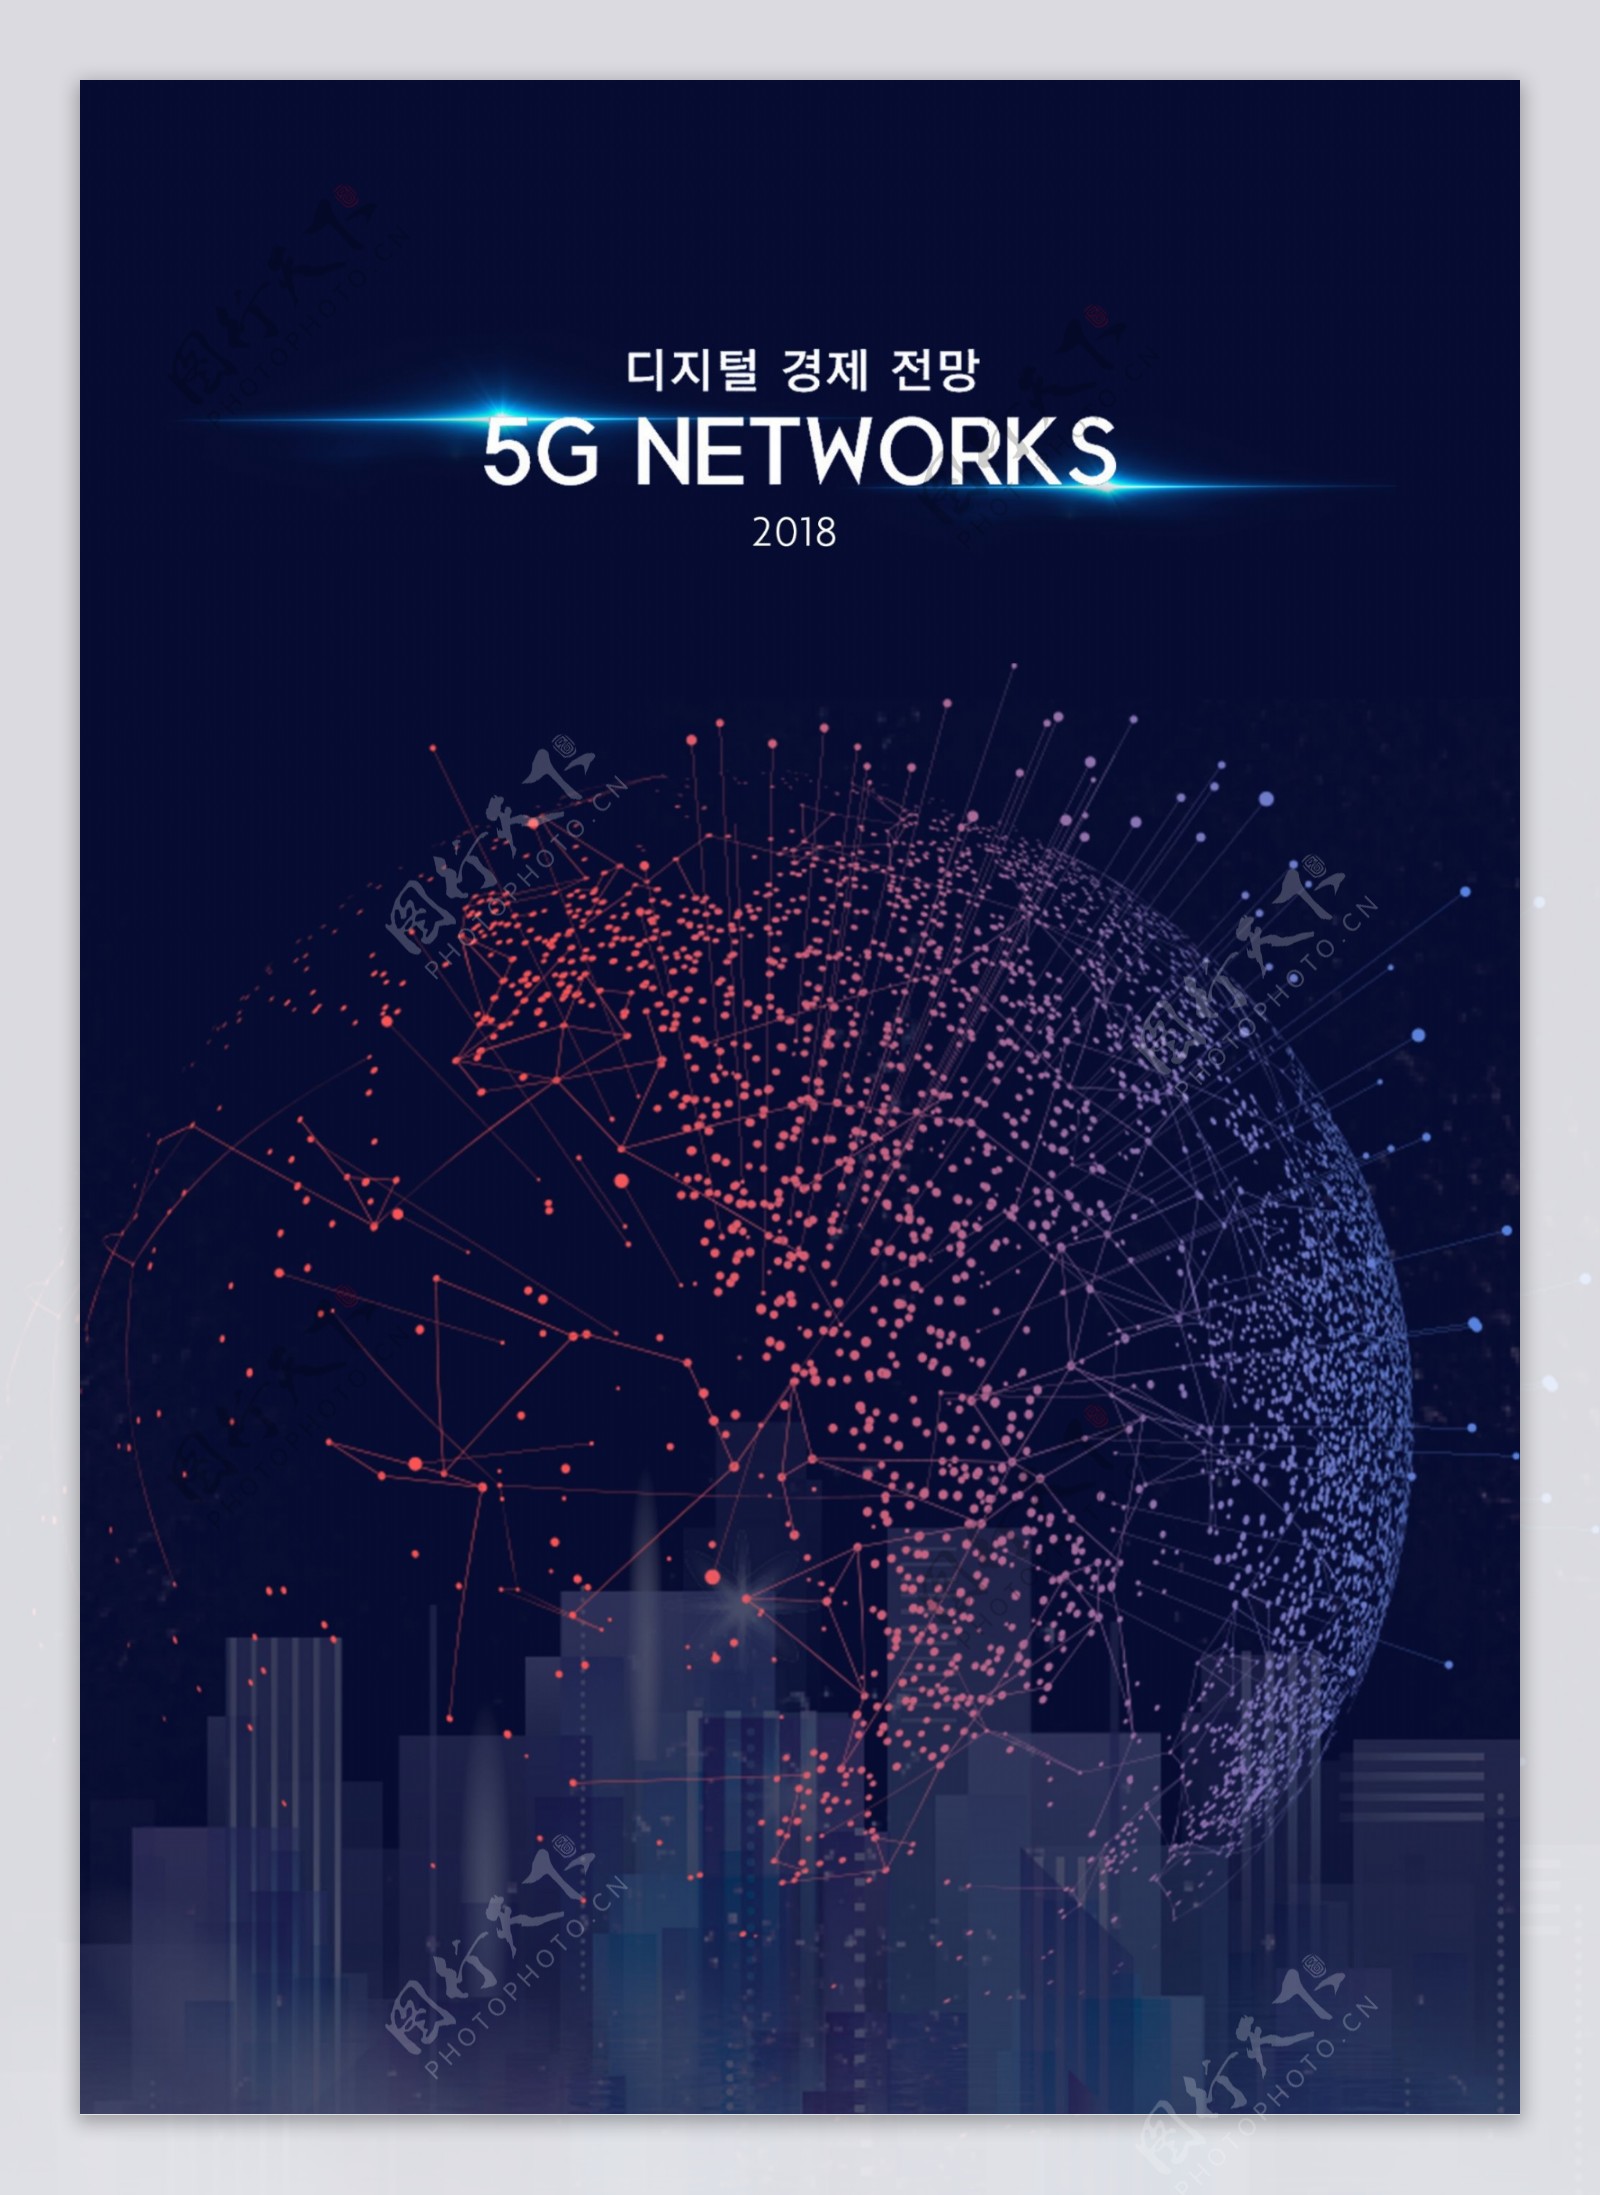 蓝色时尚抽象5G网络海报